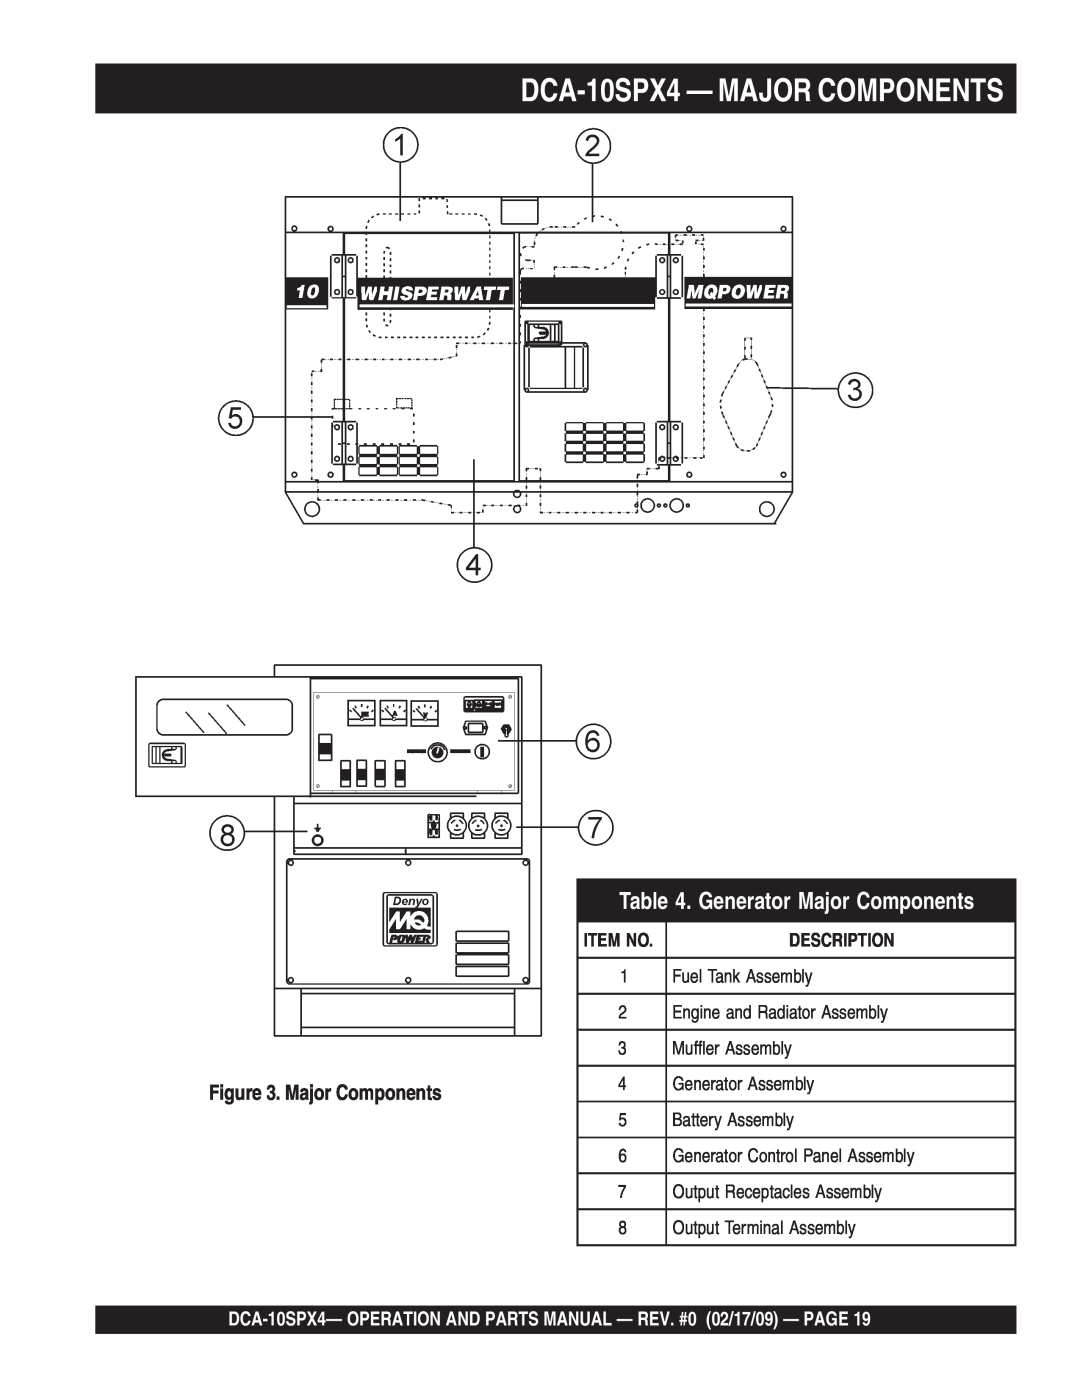 Multiquip operation manual DCA-10SPX4 - MAJOR COMPONENTS, Generator Major Components, Description, Item No 